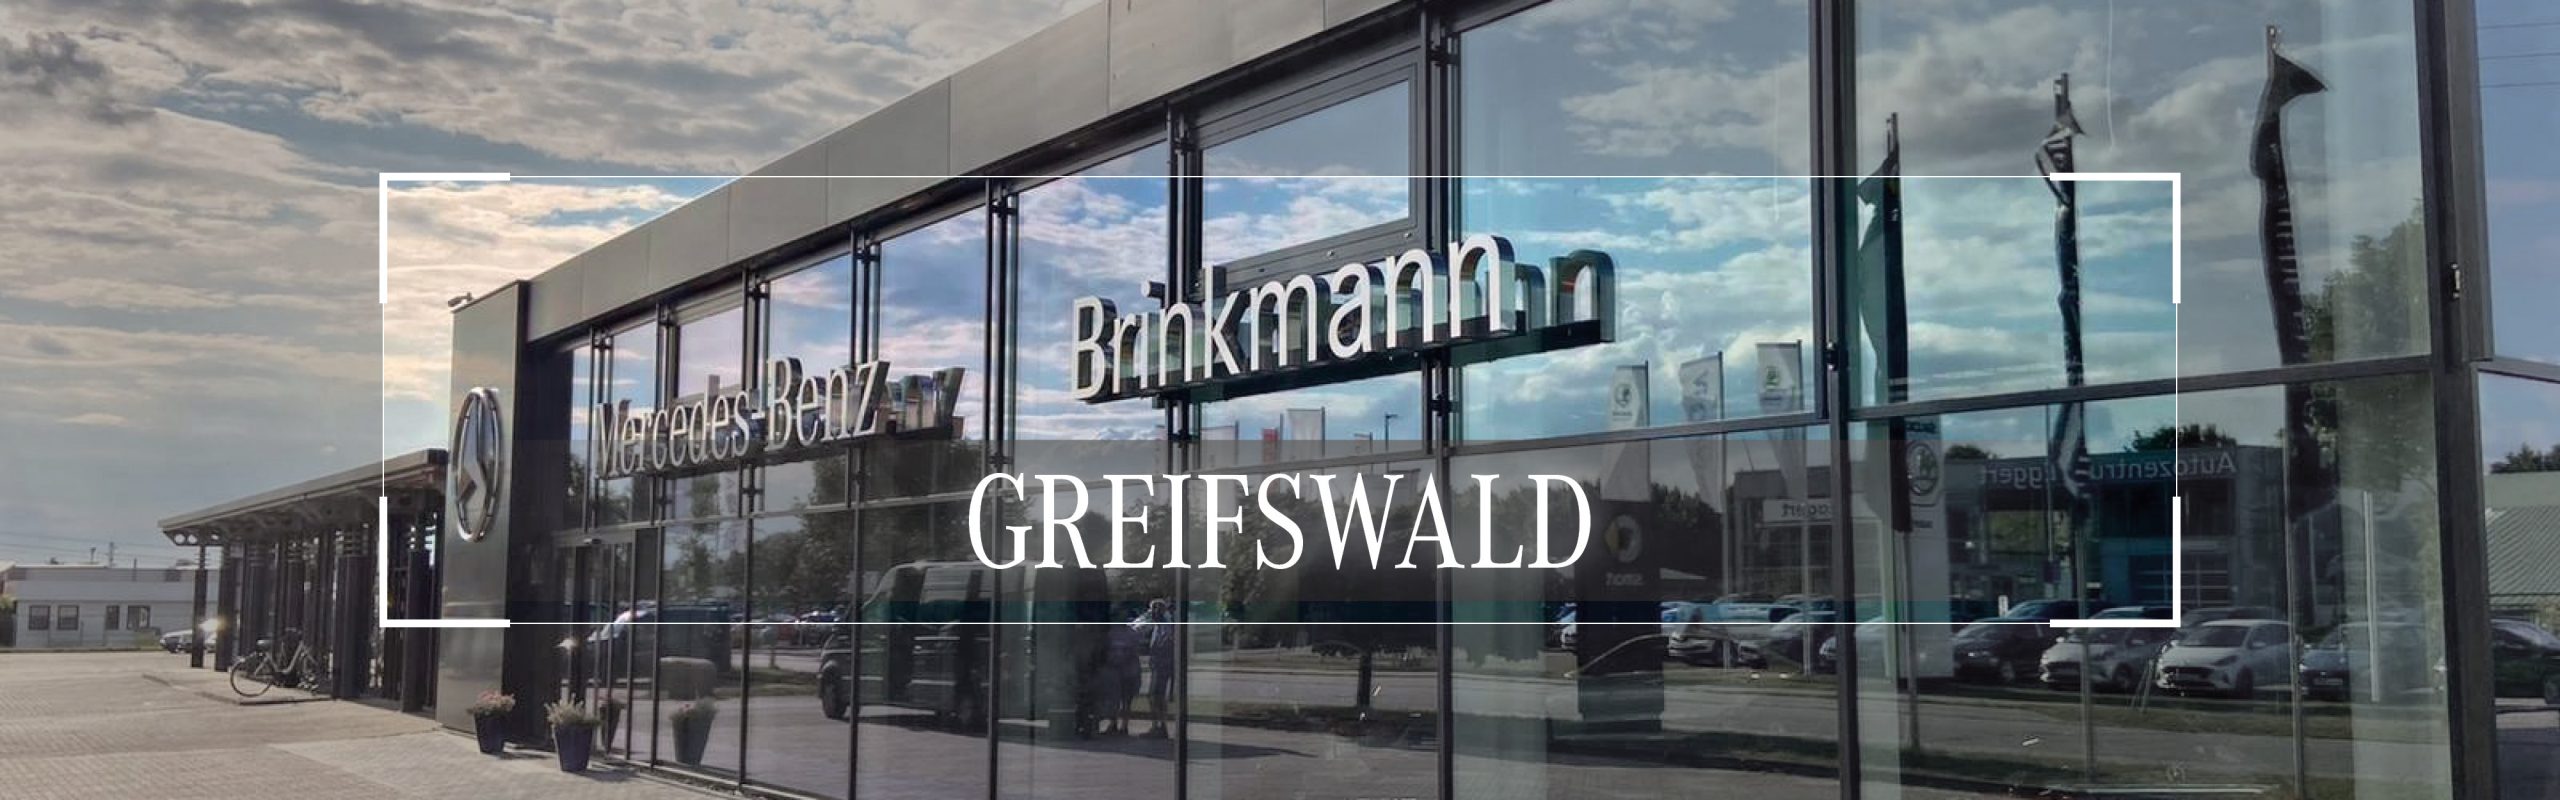 Mercedes-brinkmann-standort-in-greifswald